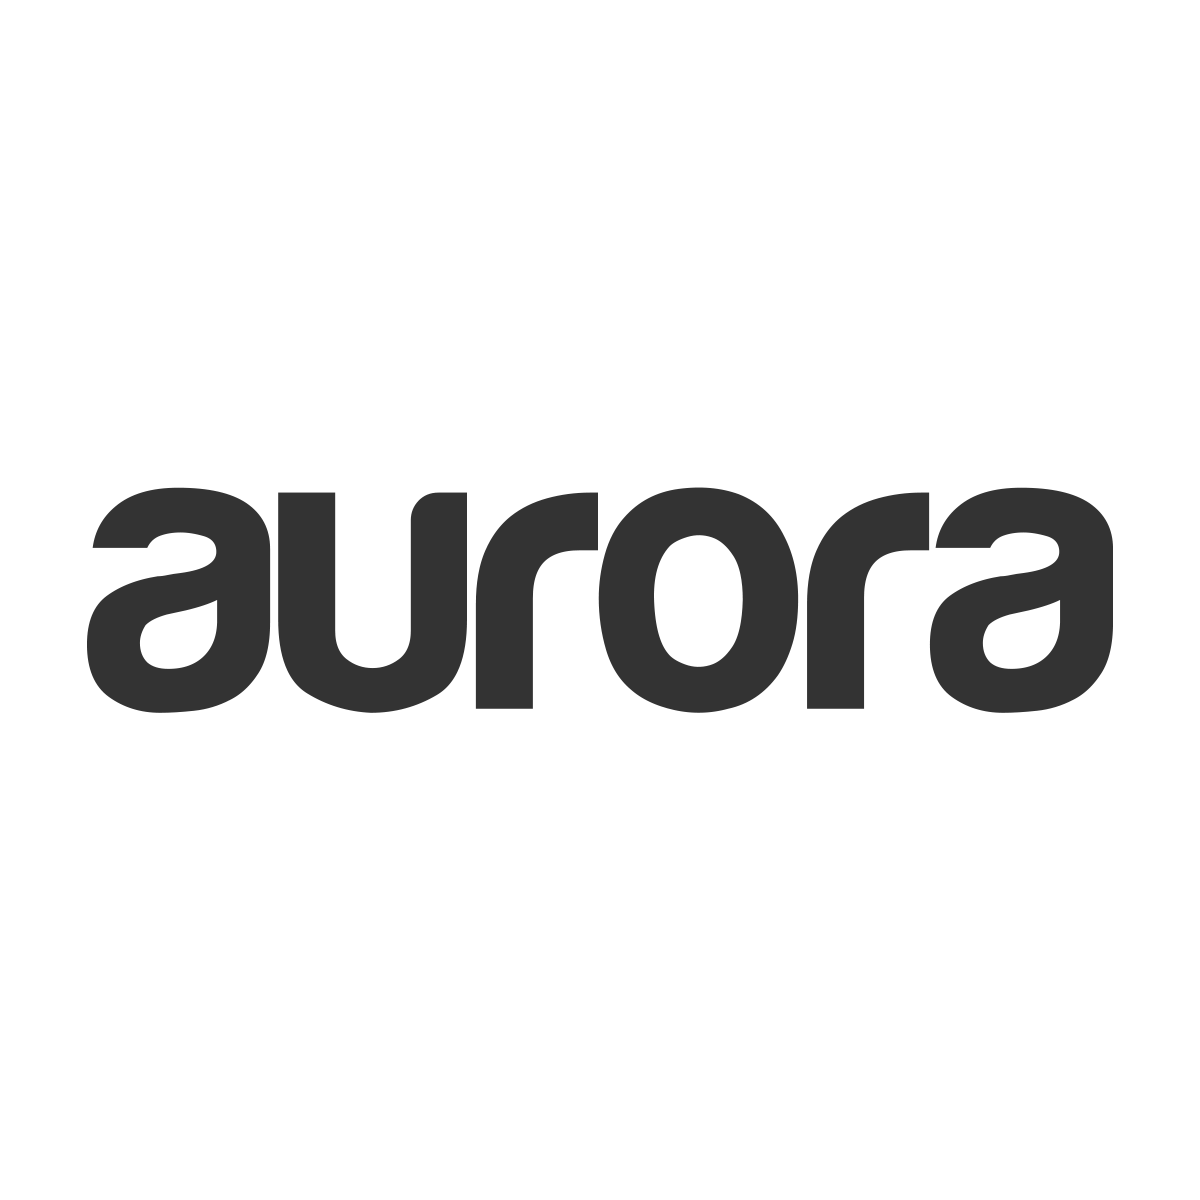 Aurora Solar